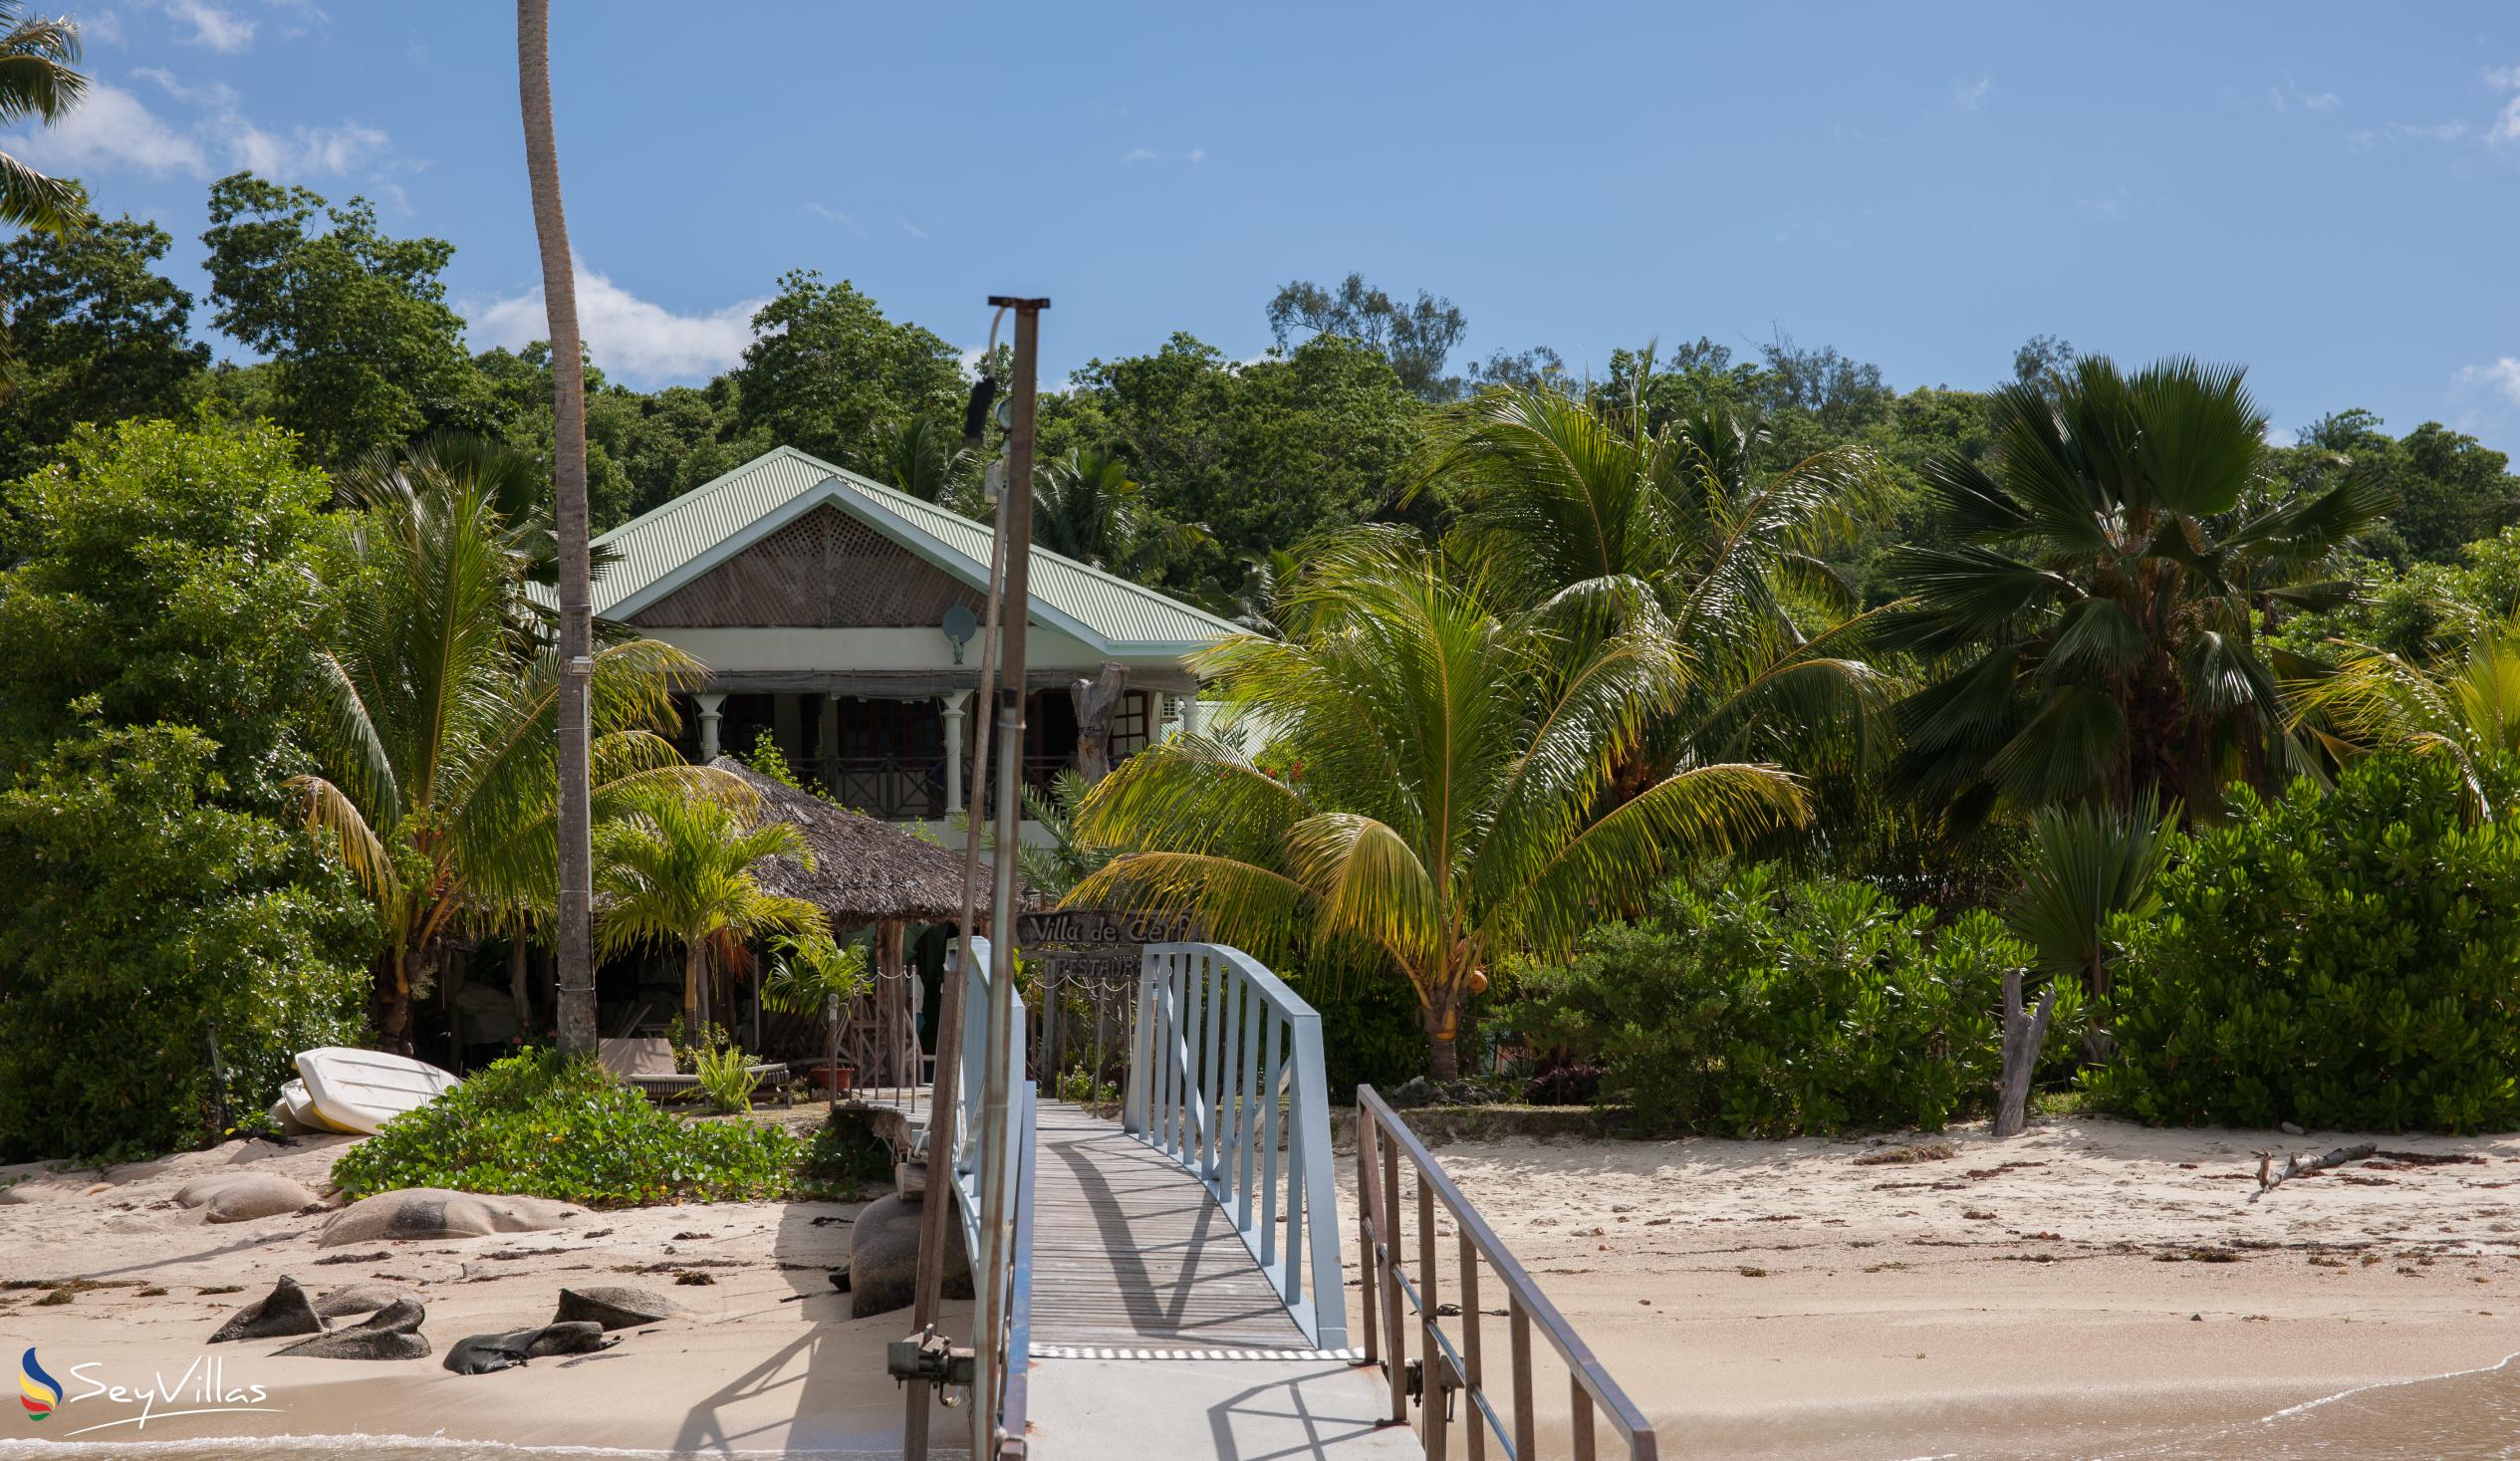 Foto 45: Villa de Cerf - Posizione - Cerf Island (Seychelles)